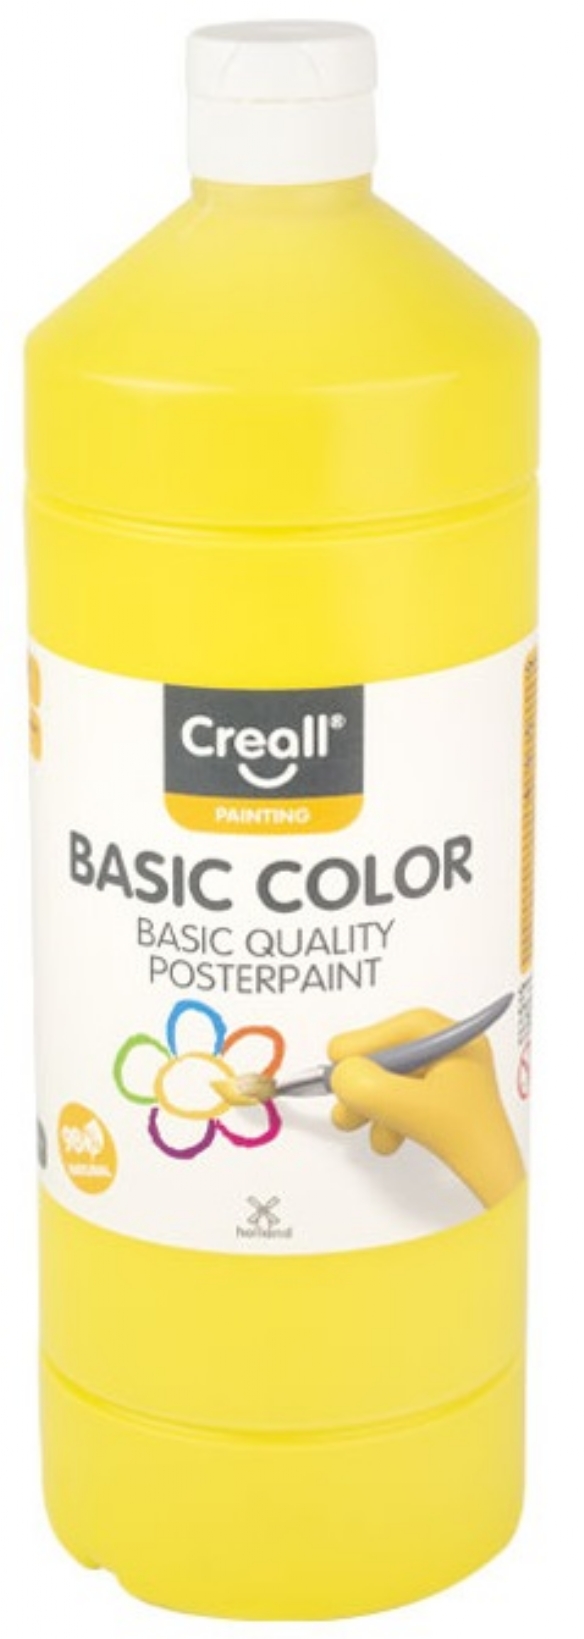 Basic-color plakkaatverf, 1000 ml, 02 primair geel